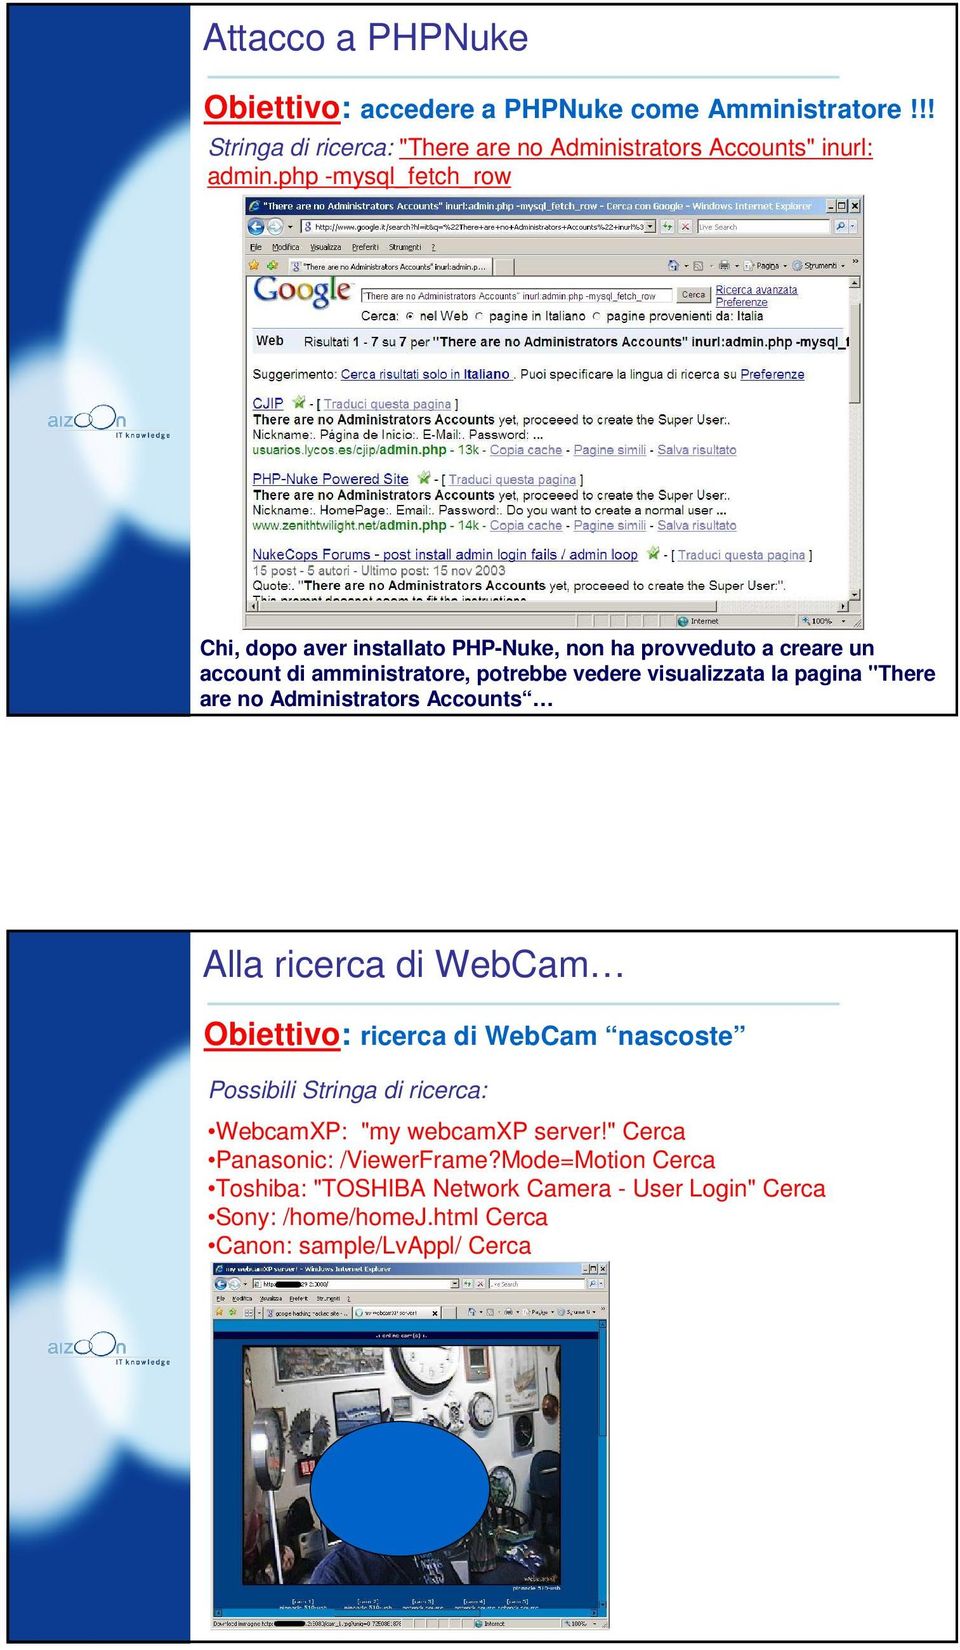 "There are no Administrators Accounts Alla ricerca di WebCam Obiettivo: ricerca di WebCam nascoste Possibili Stringa di ricerca: WebcamXP: "my webcamxp